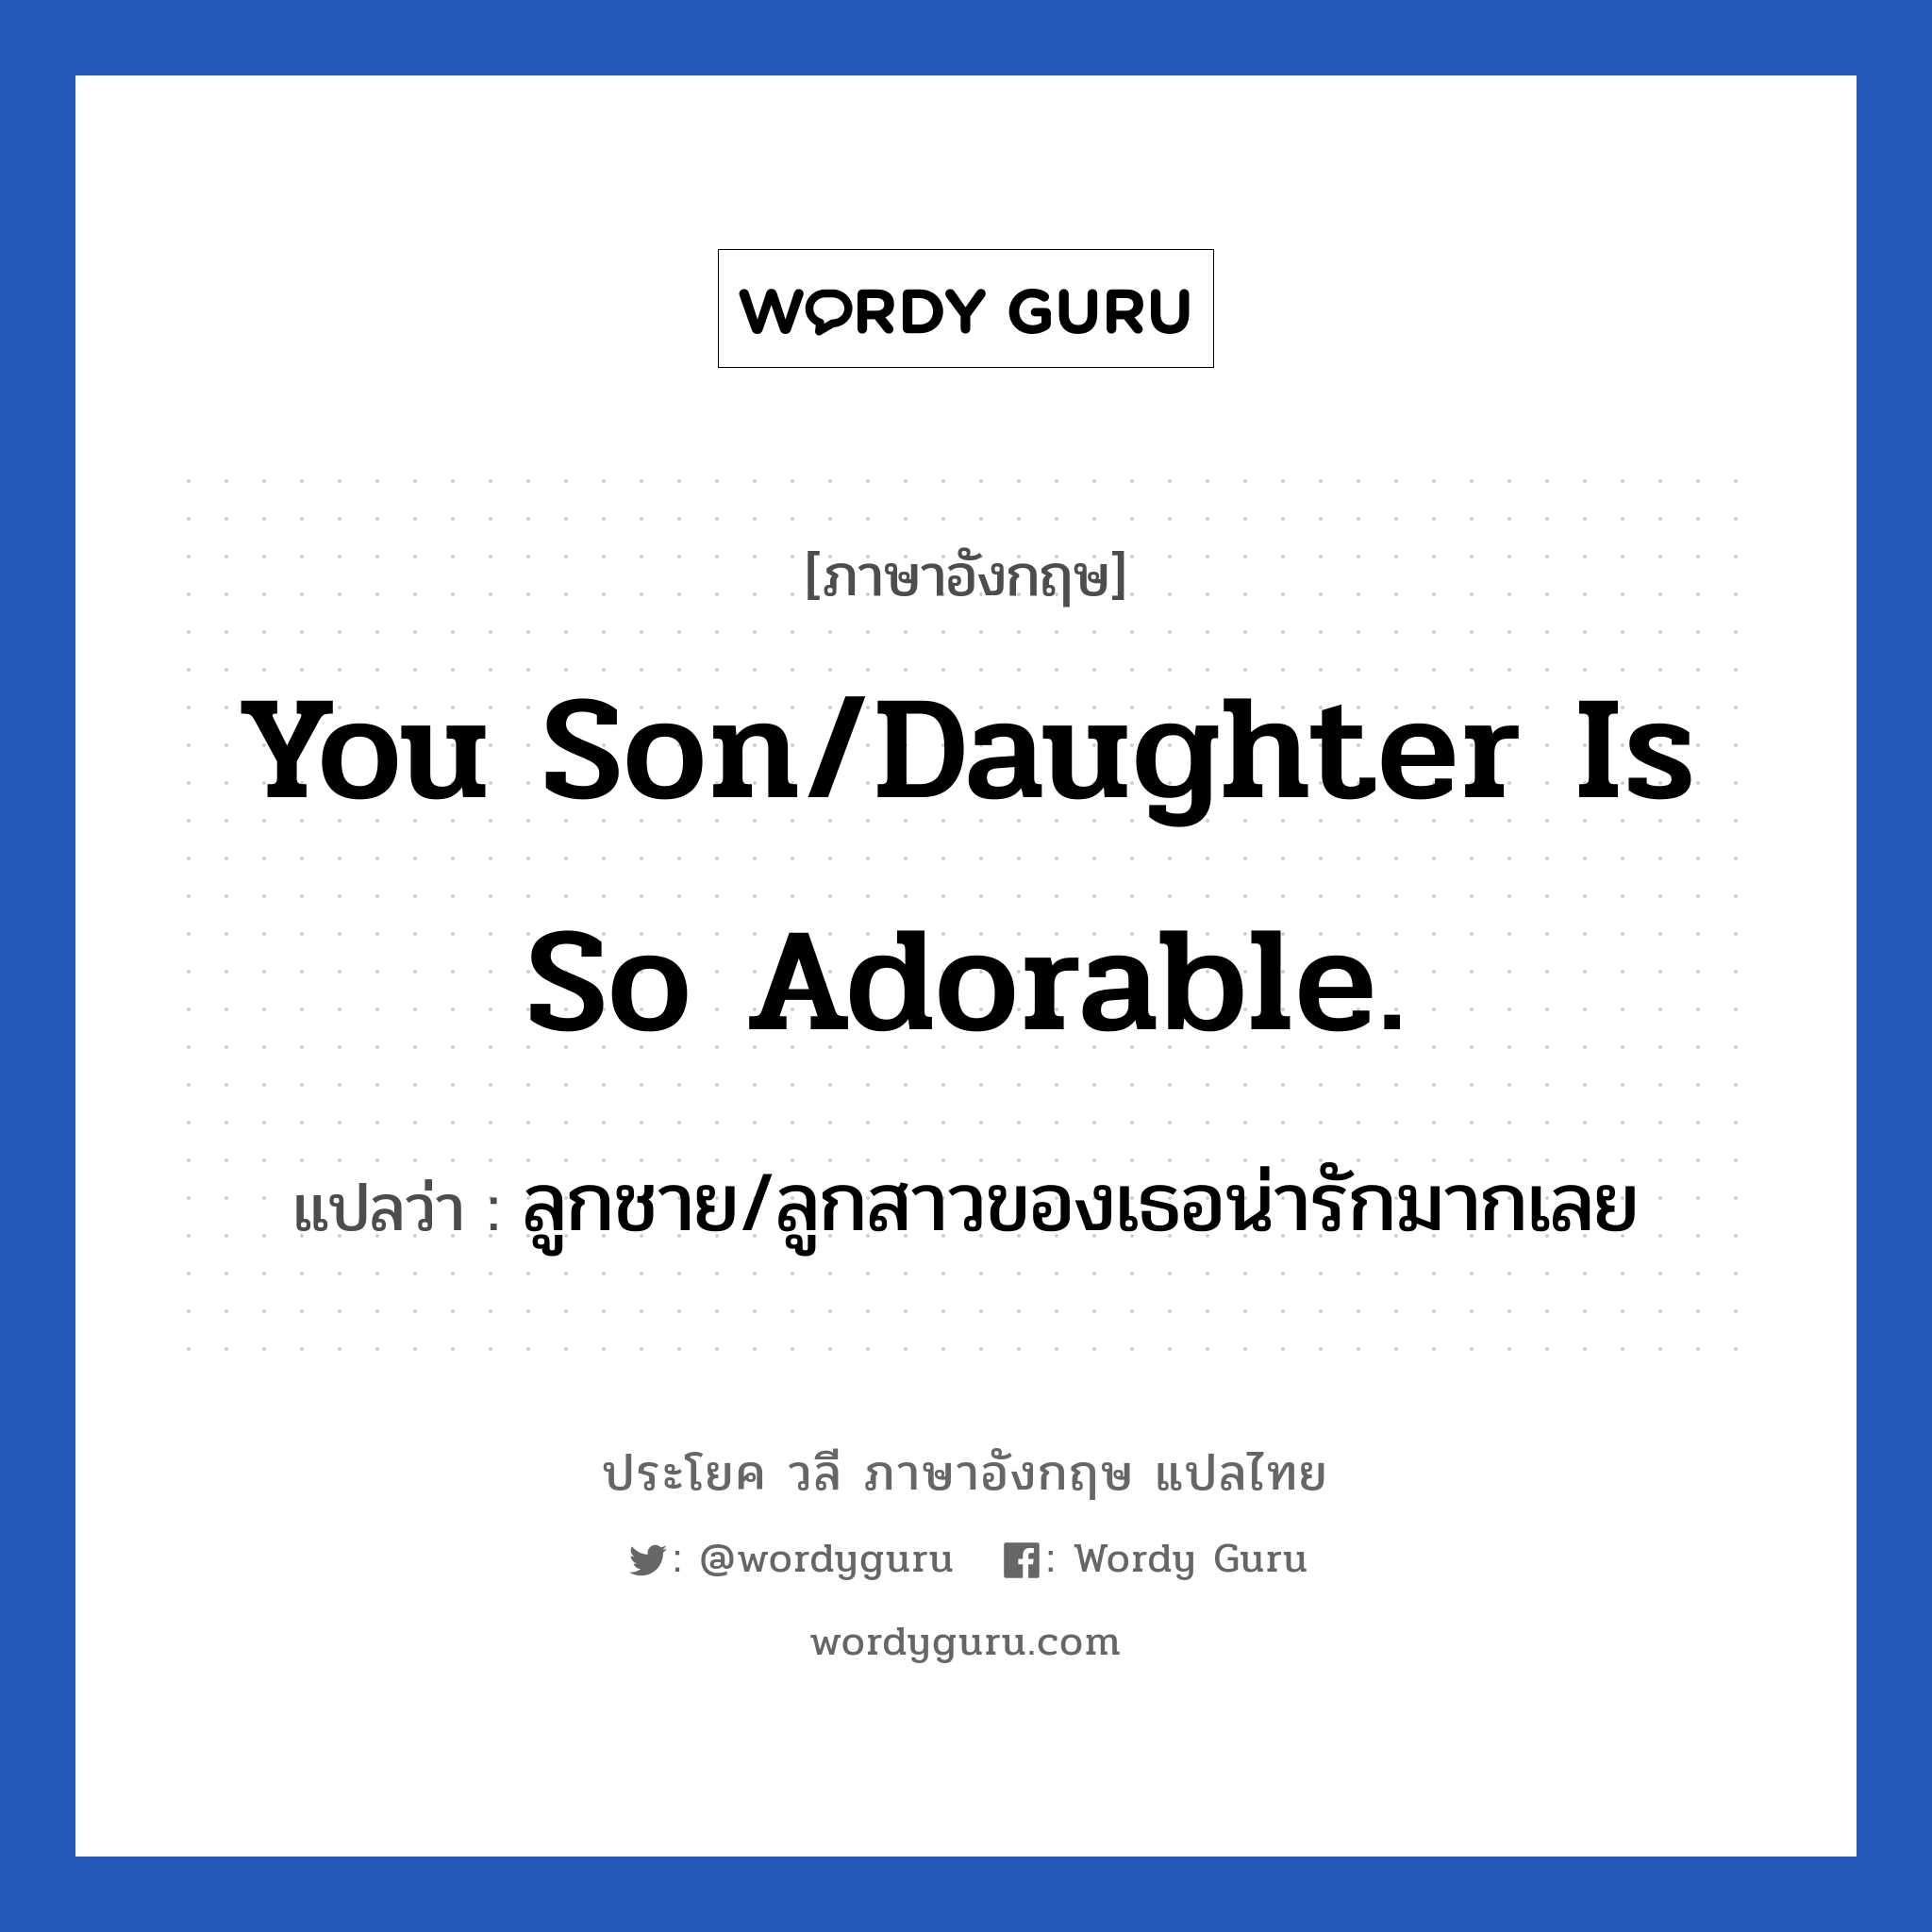 ลูกชาย/ลูกสาวของเธอน่ารักมากเลย ภาษาอังกฤษ?, วลีภาษาอังกฤษ ลูกชาย/ลูกสาวของเธอน่ารักมากเลย แปลว่า You son/daughter is so adorable. หมวด คำชมเชย